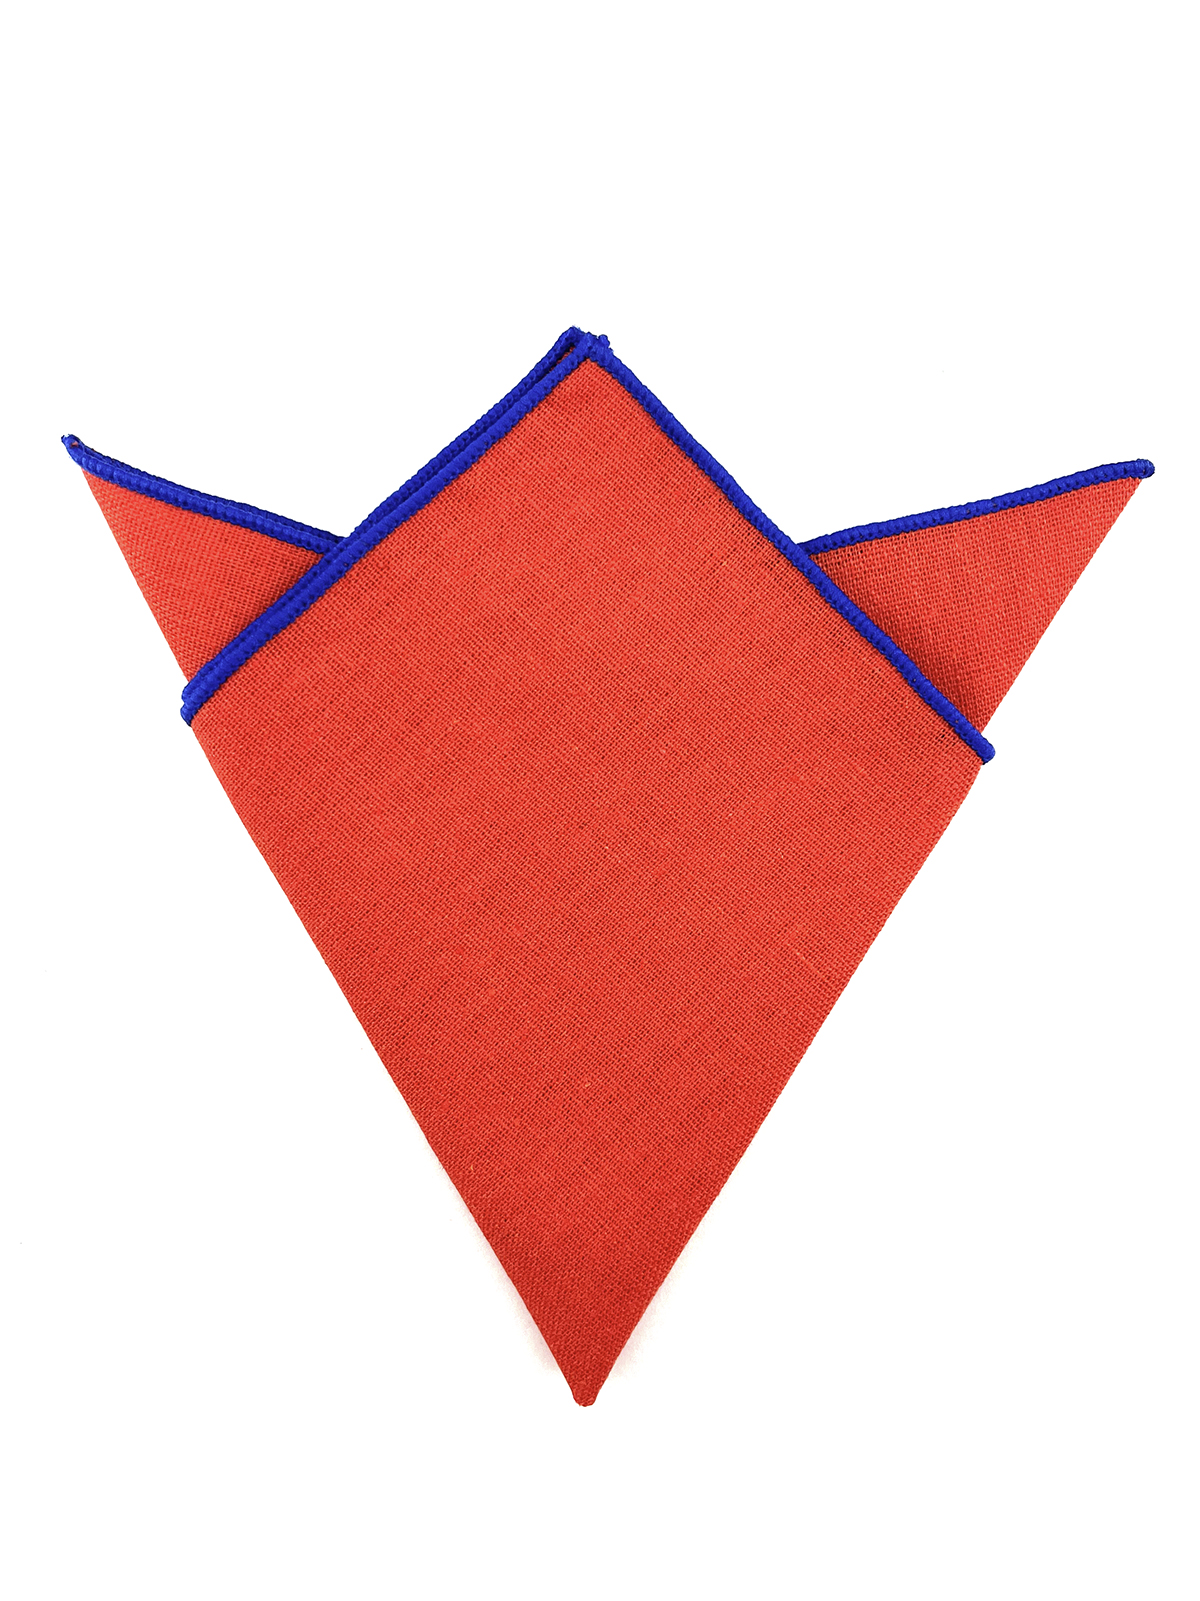 Платок в пиджак хлопковый красно-оранжевый описание: Материал - Хлопок, Размеры - 24 см х 24 см, Страна производства - Турция;